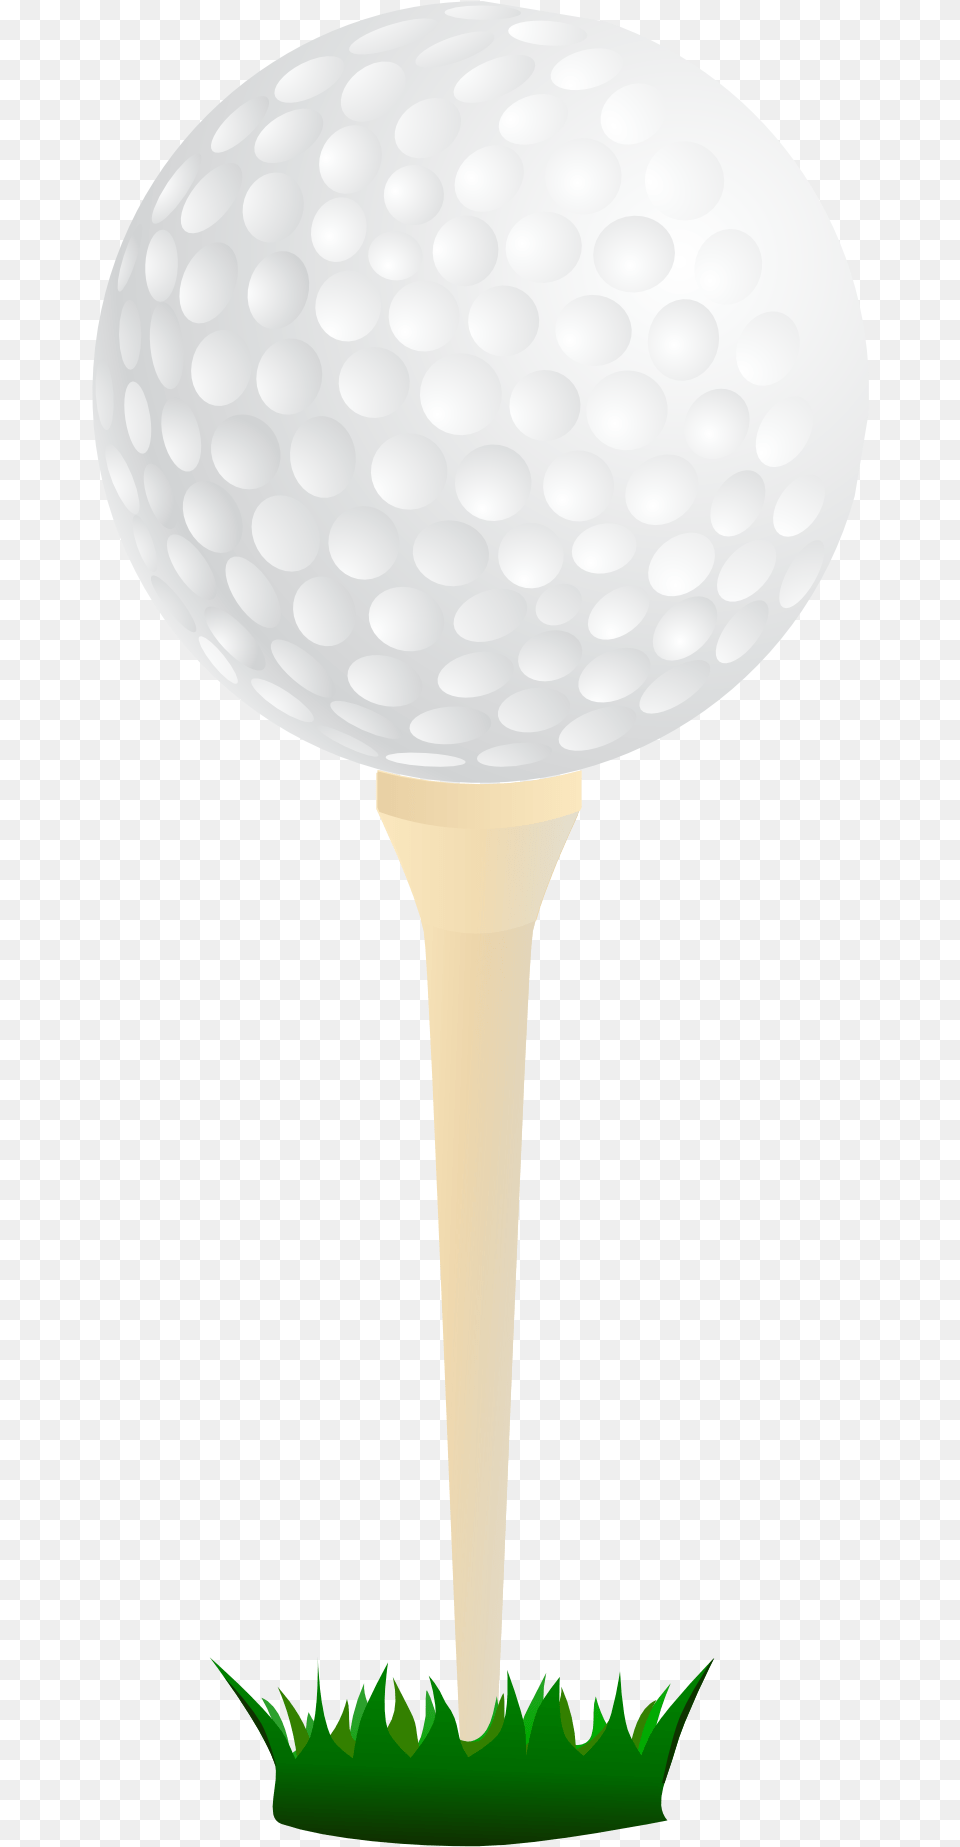 Golf Ball On A Tee Clip Art Golf Ball On Tee Shower Curtain, Golf Ball, Sport Free Transparent Png